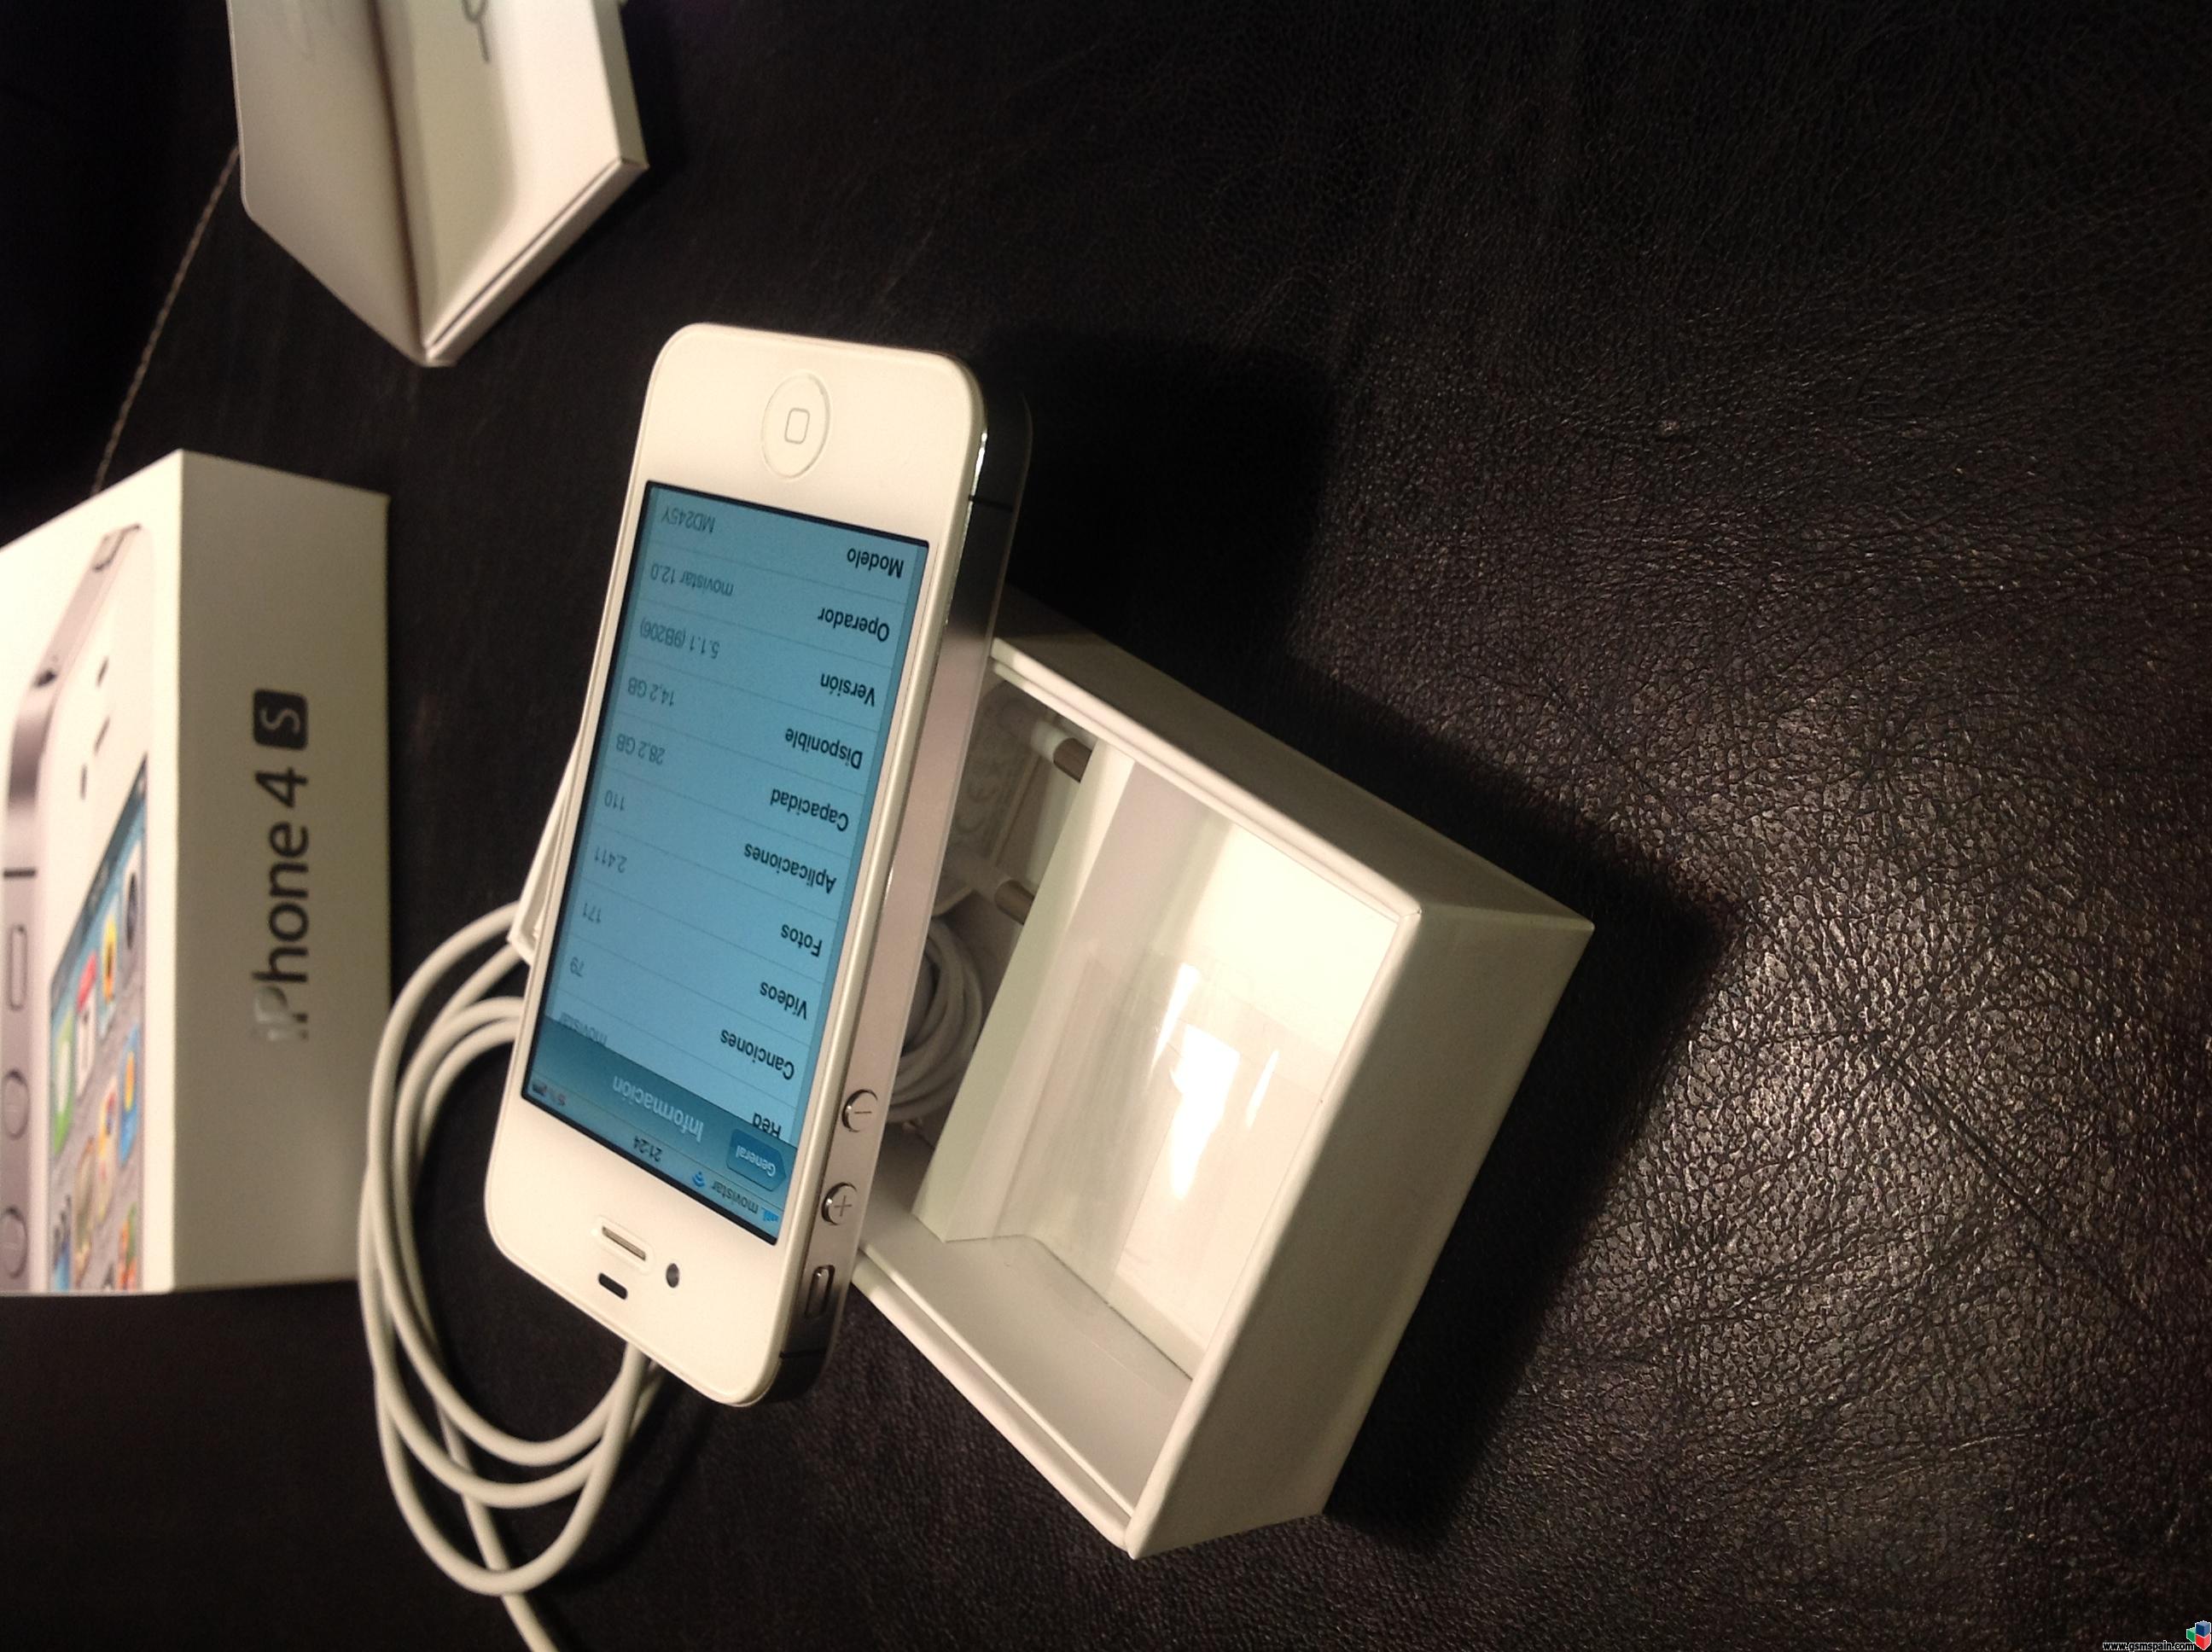 [VENDO] iPhone 4s 32gb  blanco libre con factura y accesorios (25 das de applecare)